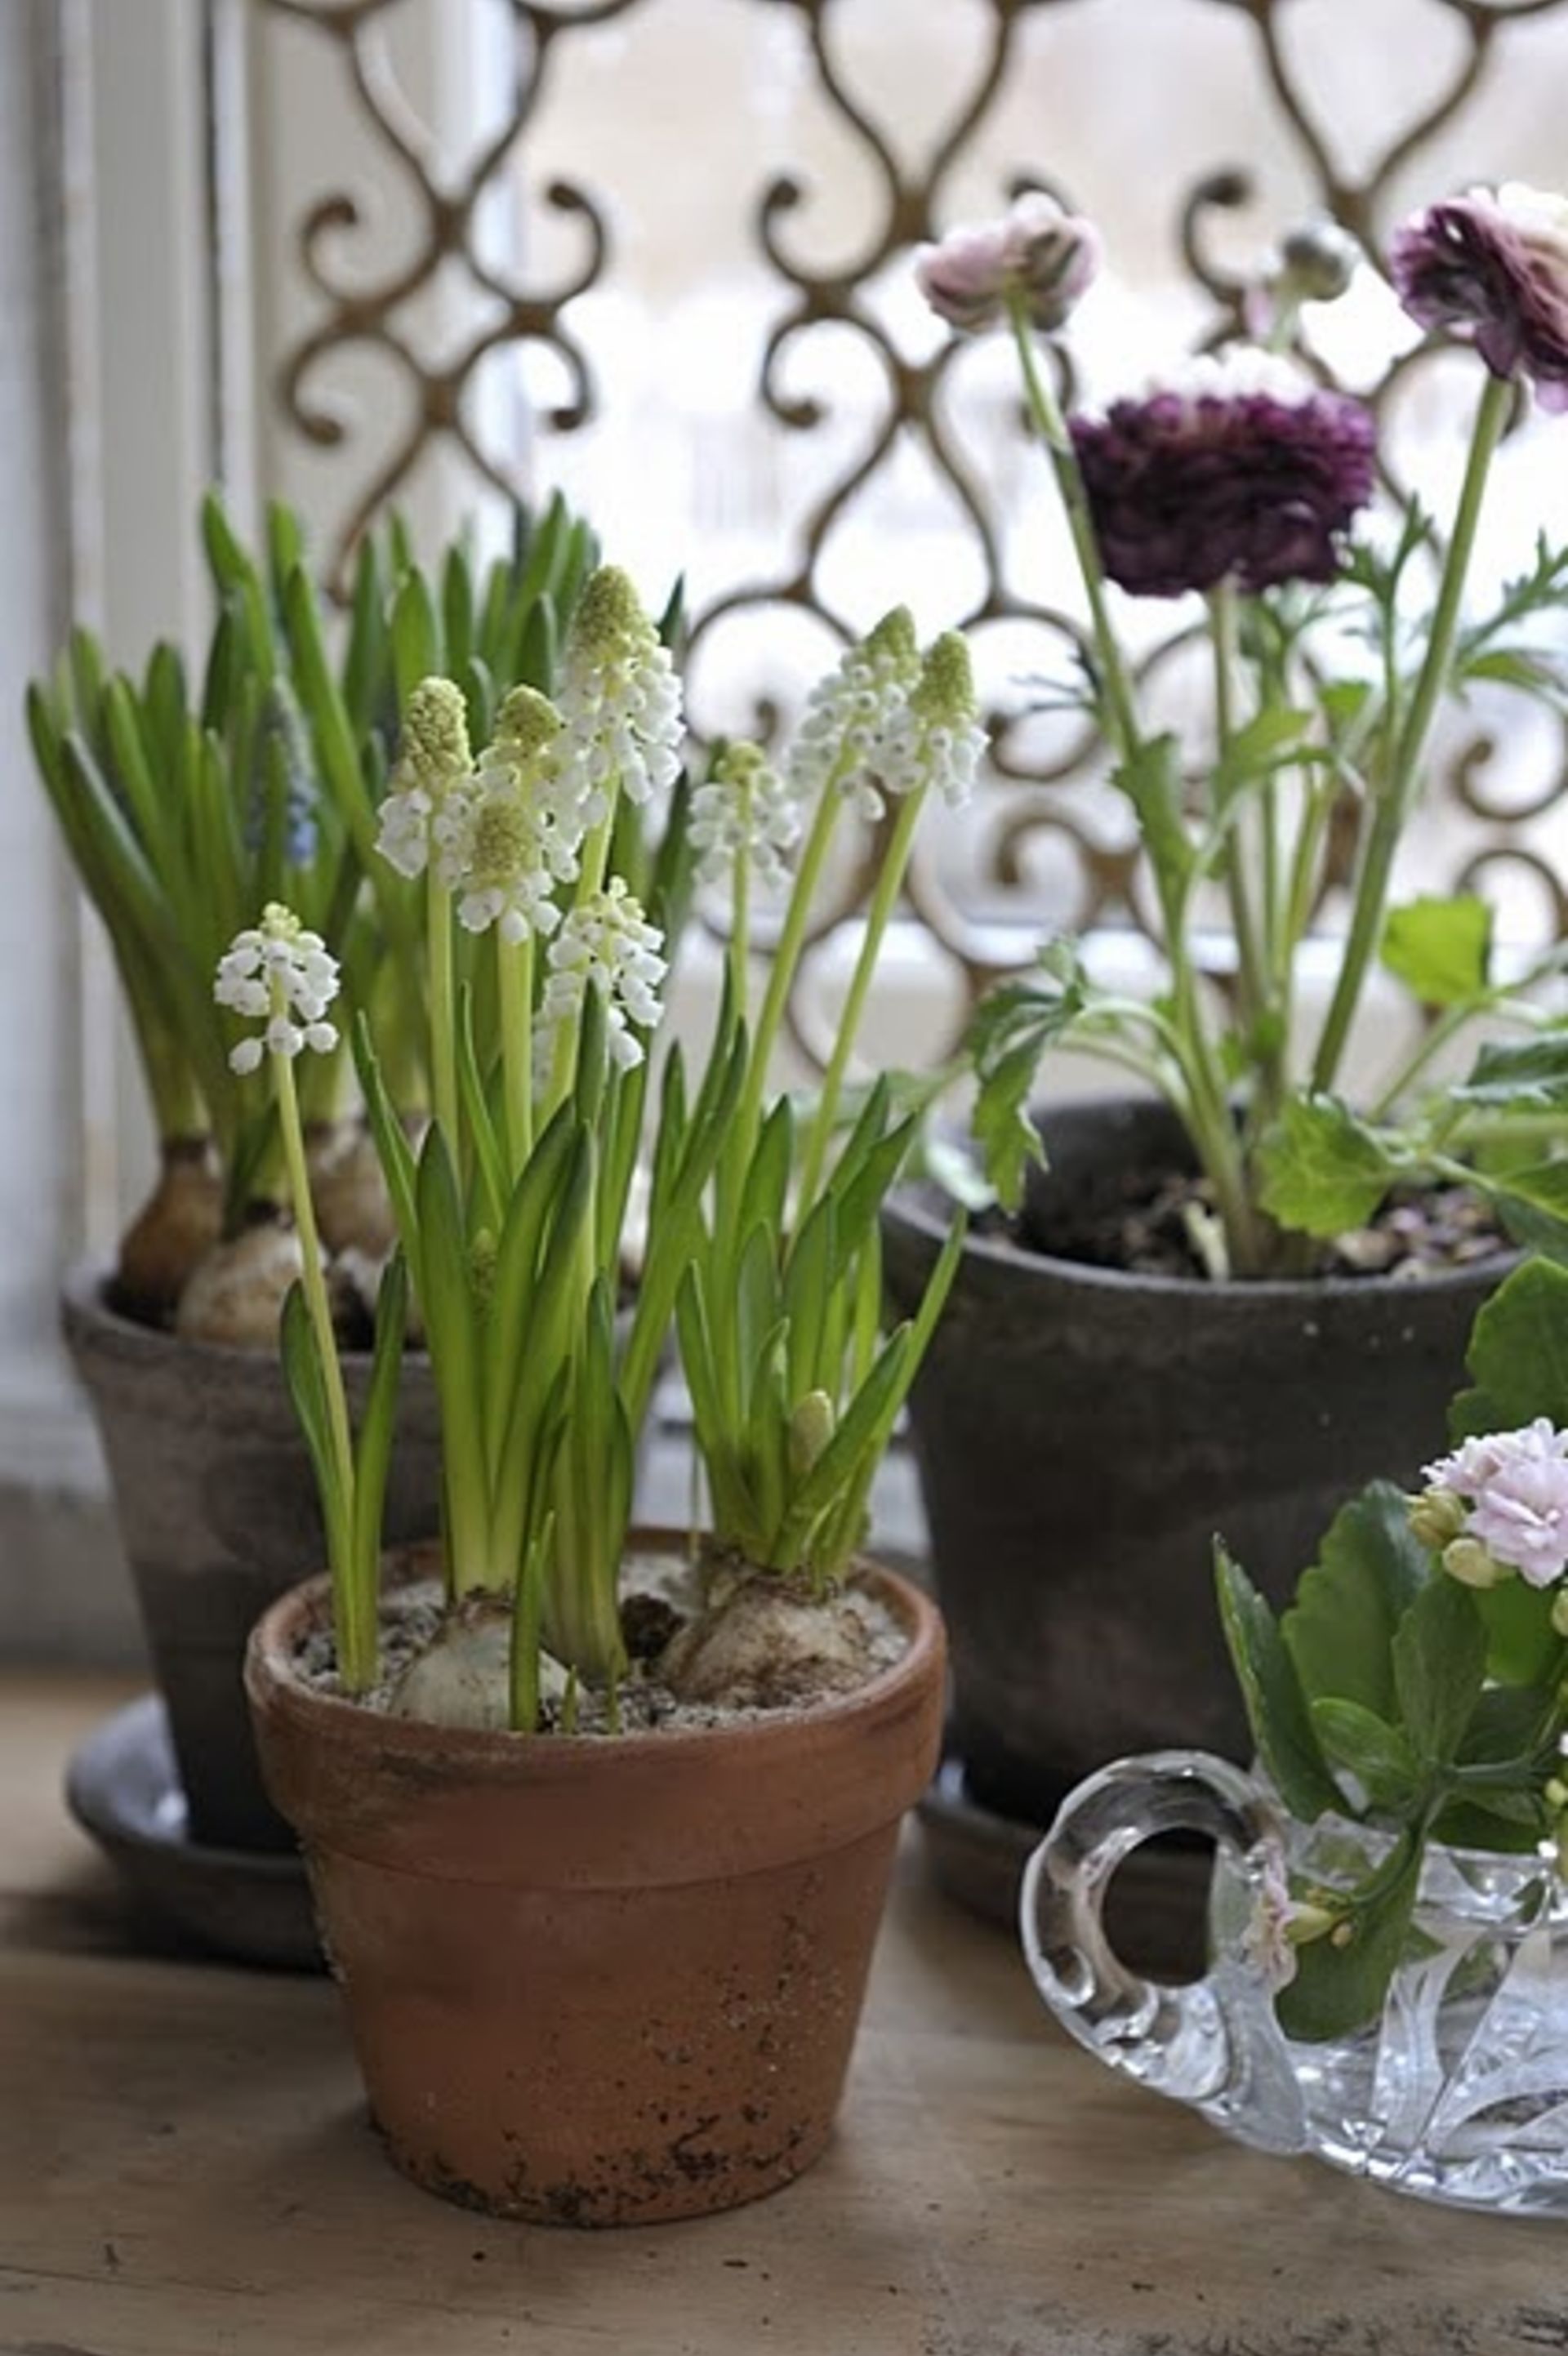 February Garden Tips to Move You into Spring